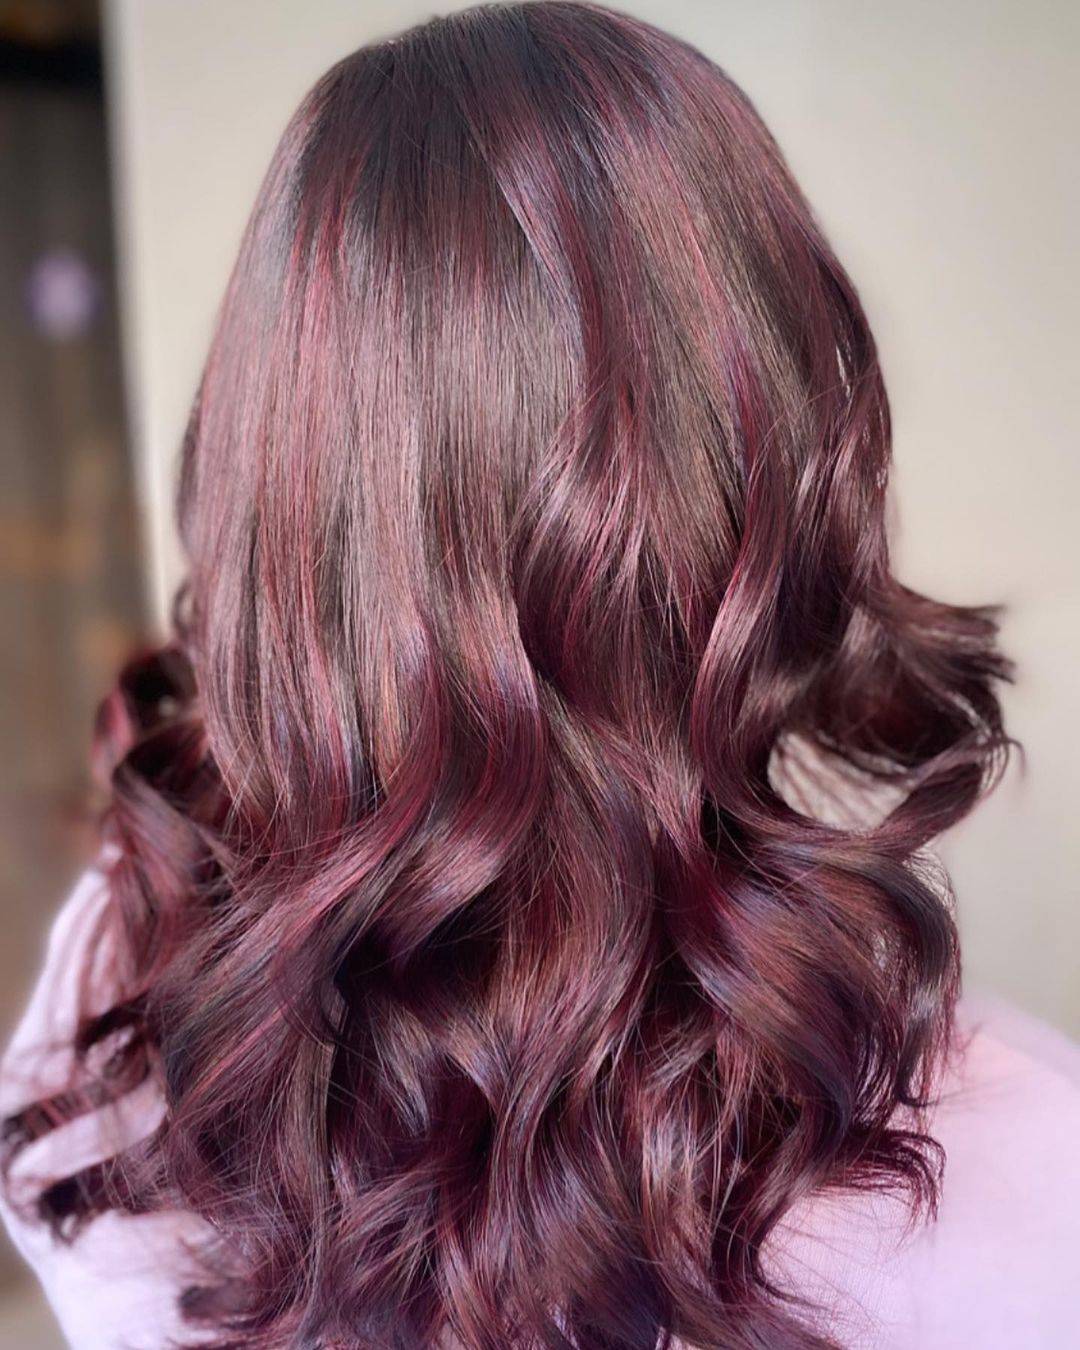 Burgundy hair color 367 burgundy hair color | burgundy hair color for women | burgundy hair color highlights Burgundy Hair Color